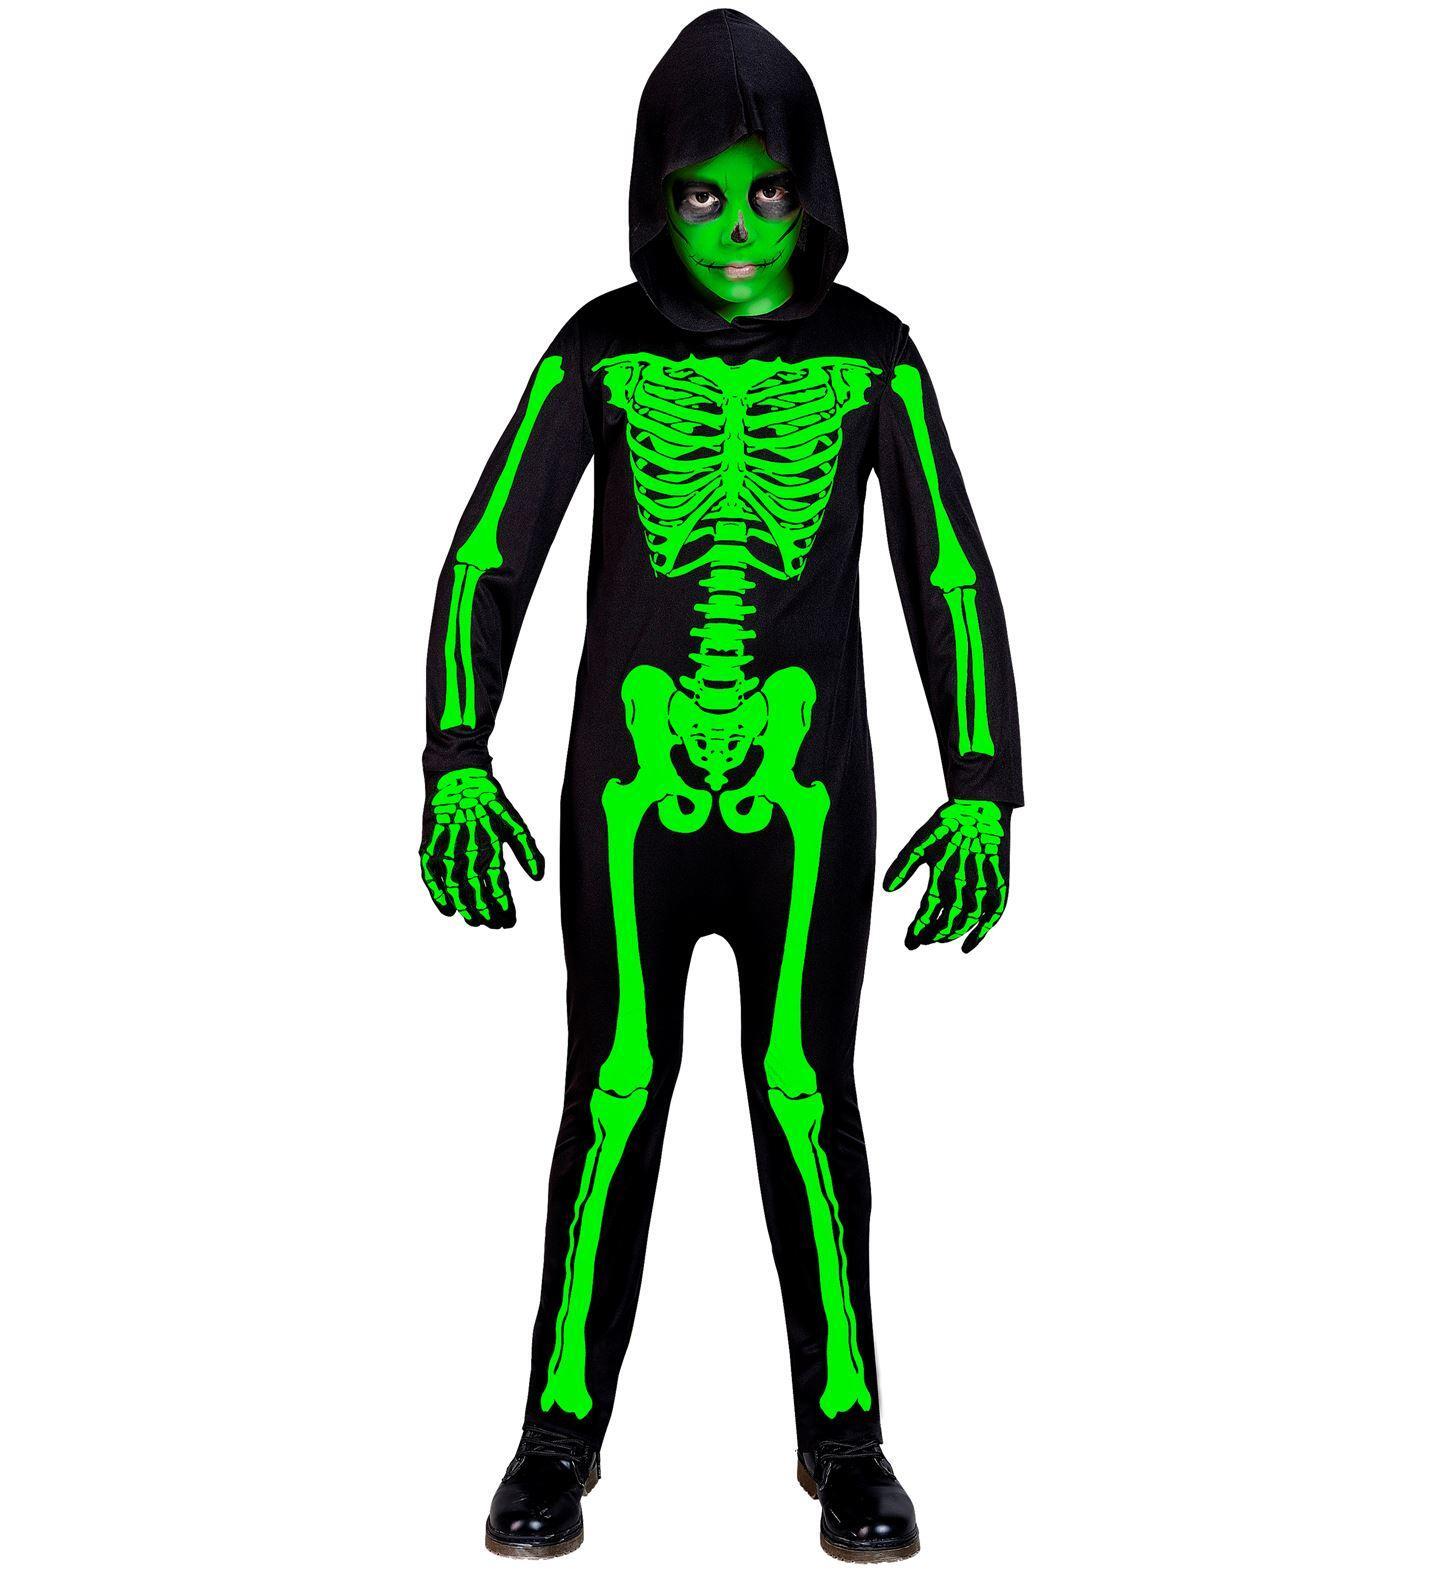 Skelet groen outfitje voor kinderen